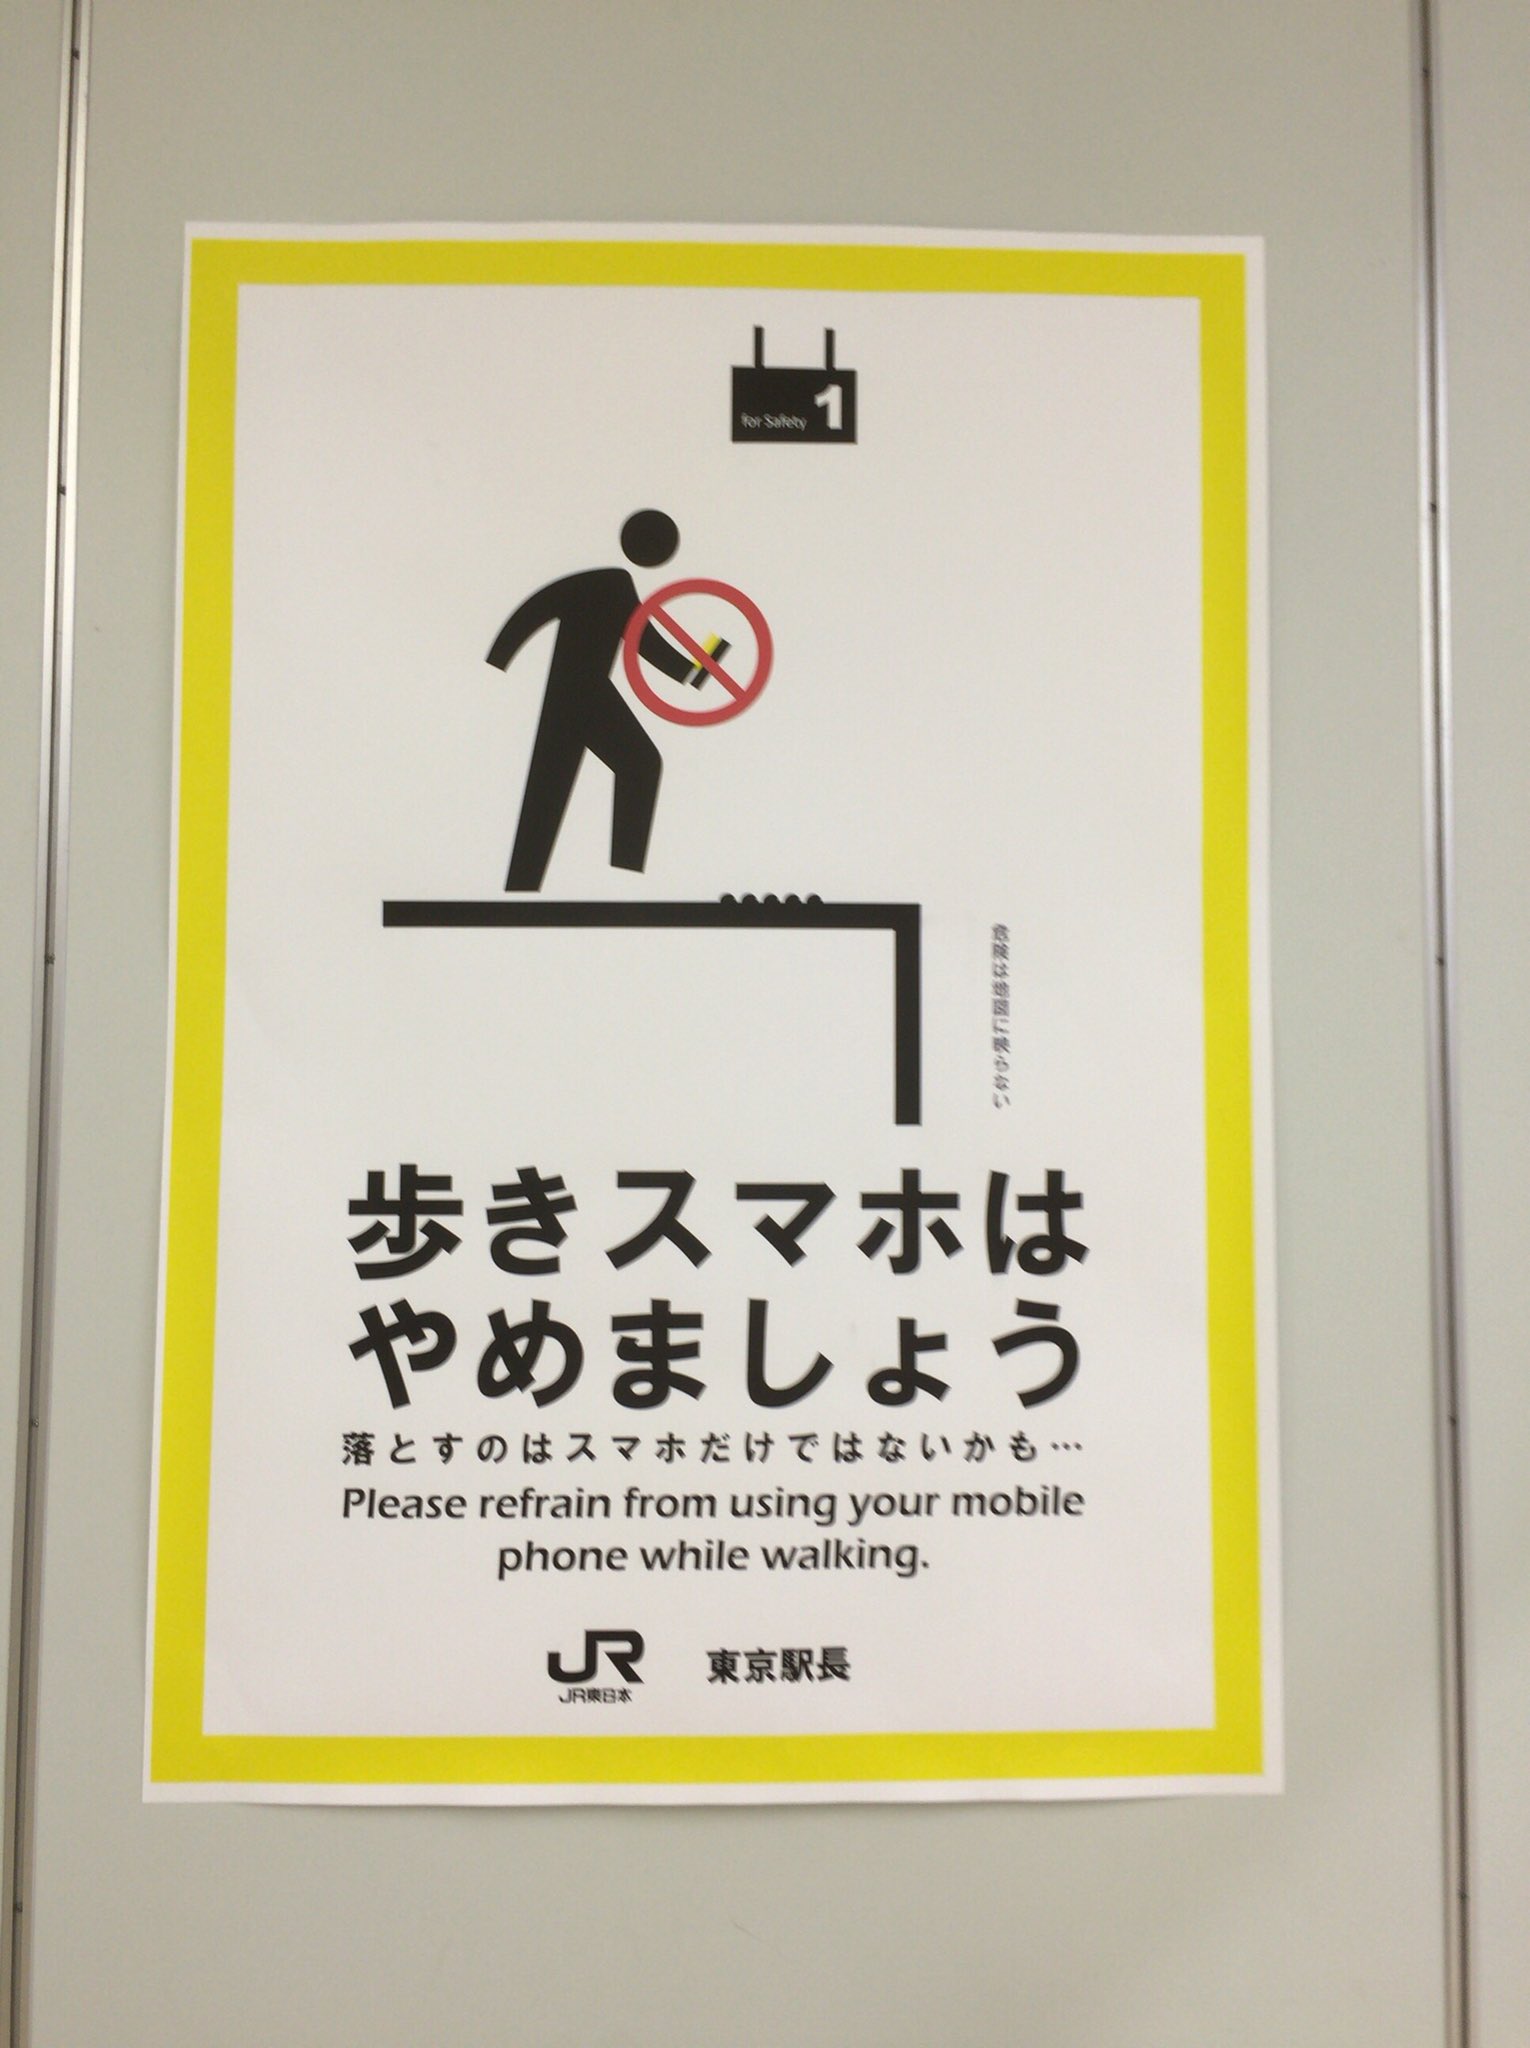 電車とエヌの博物館 Al Twitter 東京駅の歩きスマホ禁止ポスター 標語とか細かいところまで凝っている For Safetyという番線表示も洒落ている この番線のフォントは何線と一緒だとかあるのかな もじ鉄 などと T Co Qsqjar92w7 Twitter